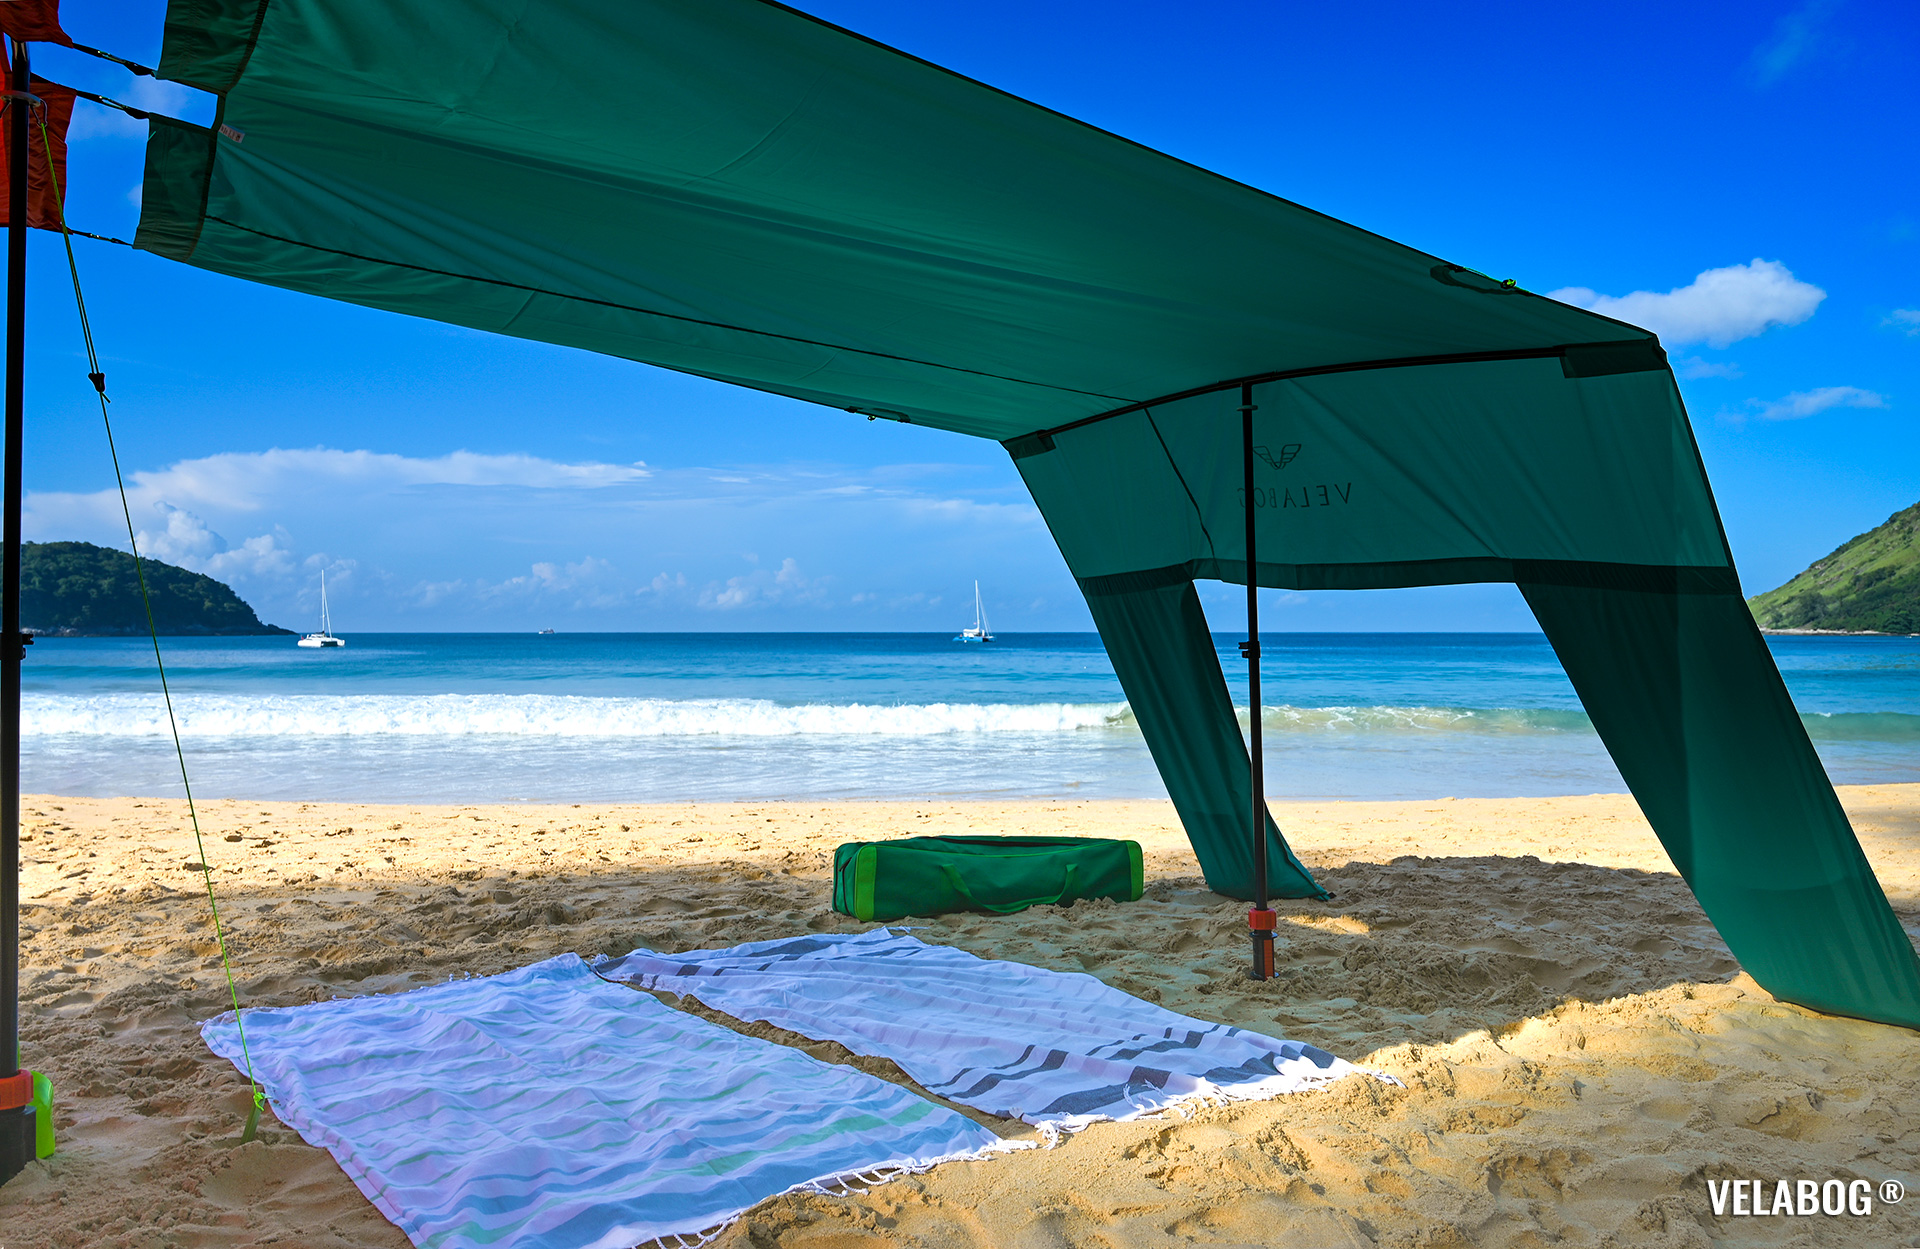 Zwei Strand Sonnensegeln Strandzelte Velabog Breeze im kombinierten Aufbau. Bester Sonnenschutz am Strand mit viel Schatten für ganze Großfamilie. Aufbauoption mit Erweiterungs-Set beim keinen oder leichten Wind. Details.